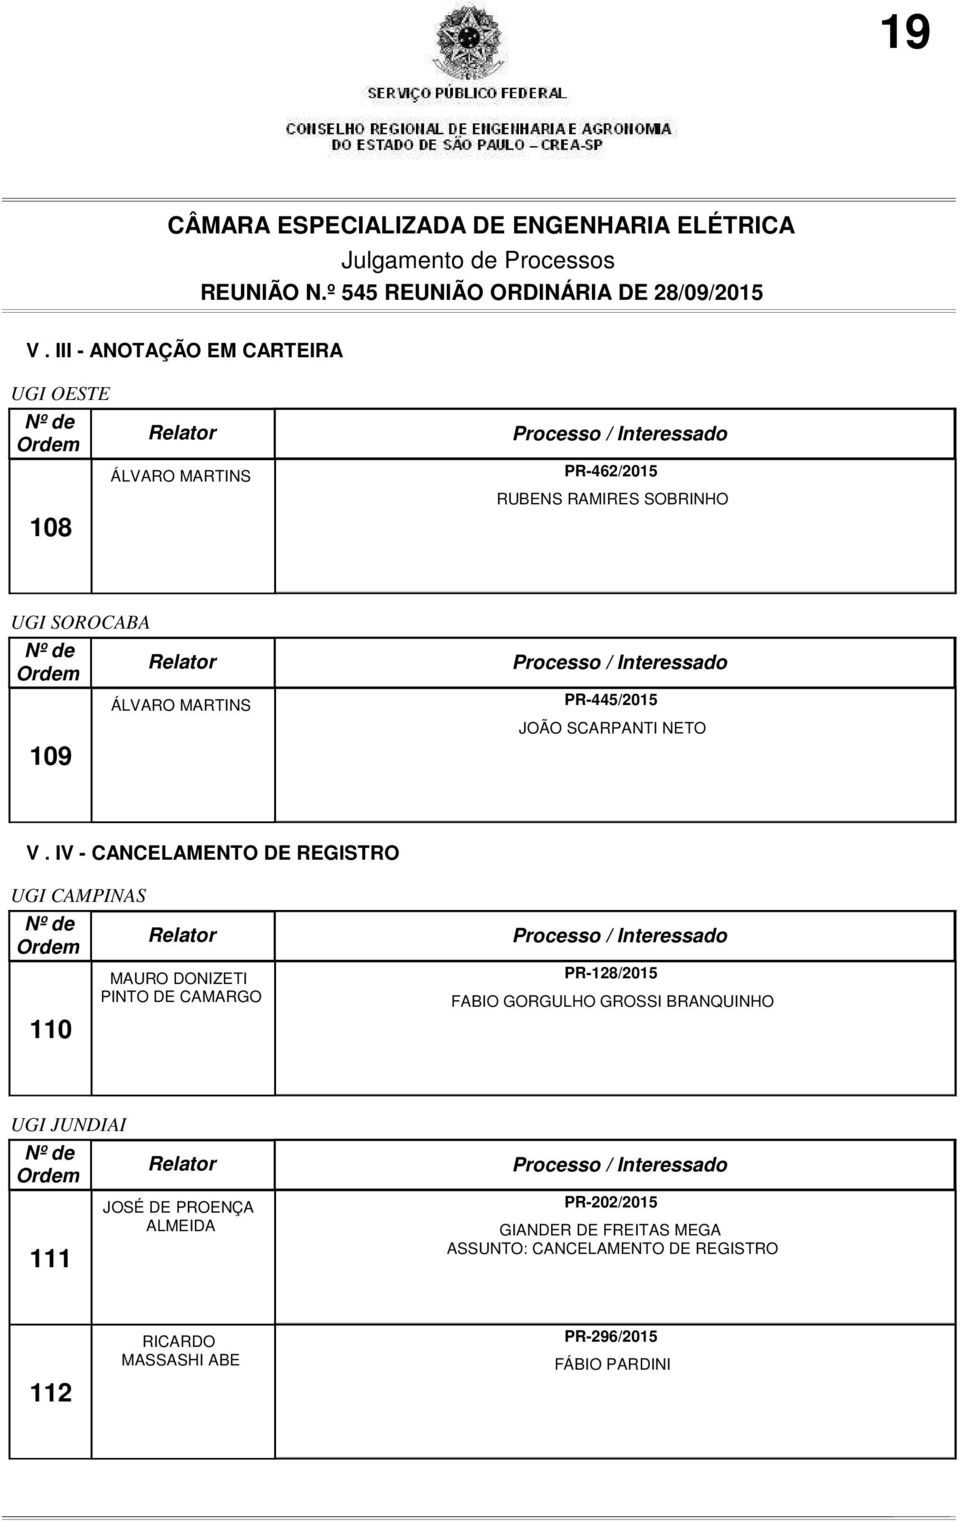 IV - CANCELAMENTO DE REGISTRO UGI CAMPINAS 110 MAURO DONIZETI PINTO DE CAMARGO PR-128/2015 FABIO